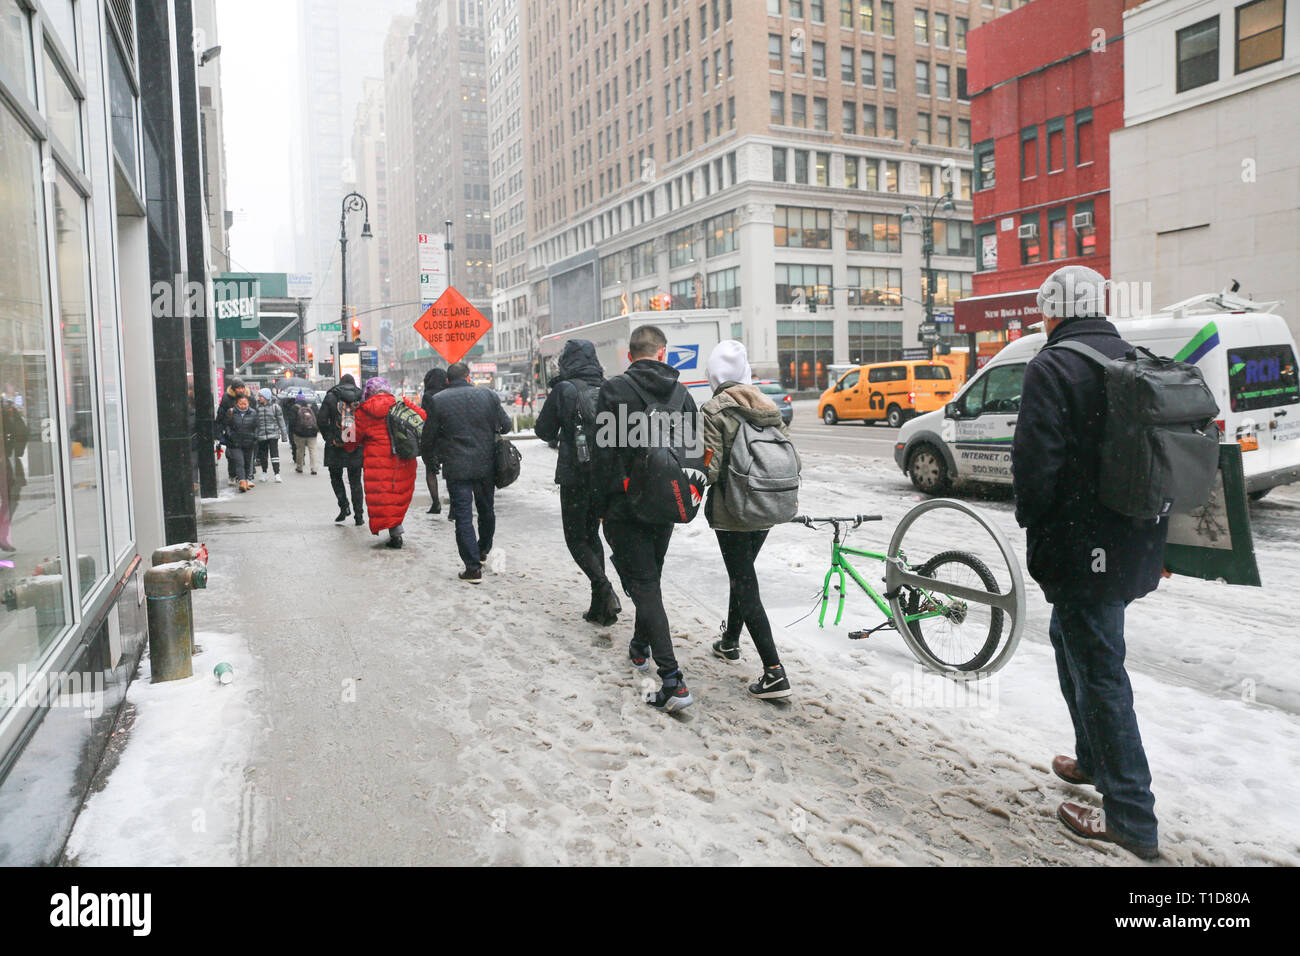 New York, USA, 12. Februar 2019: Ein Winter Schneesturm bringt Verkehr und Fußgänger auf ein langsames Kriechen auf der New York Street. - Bild Stockfoto